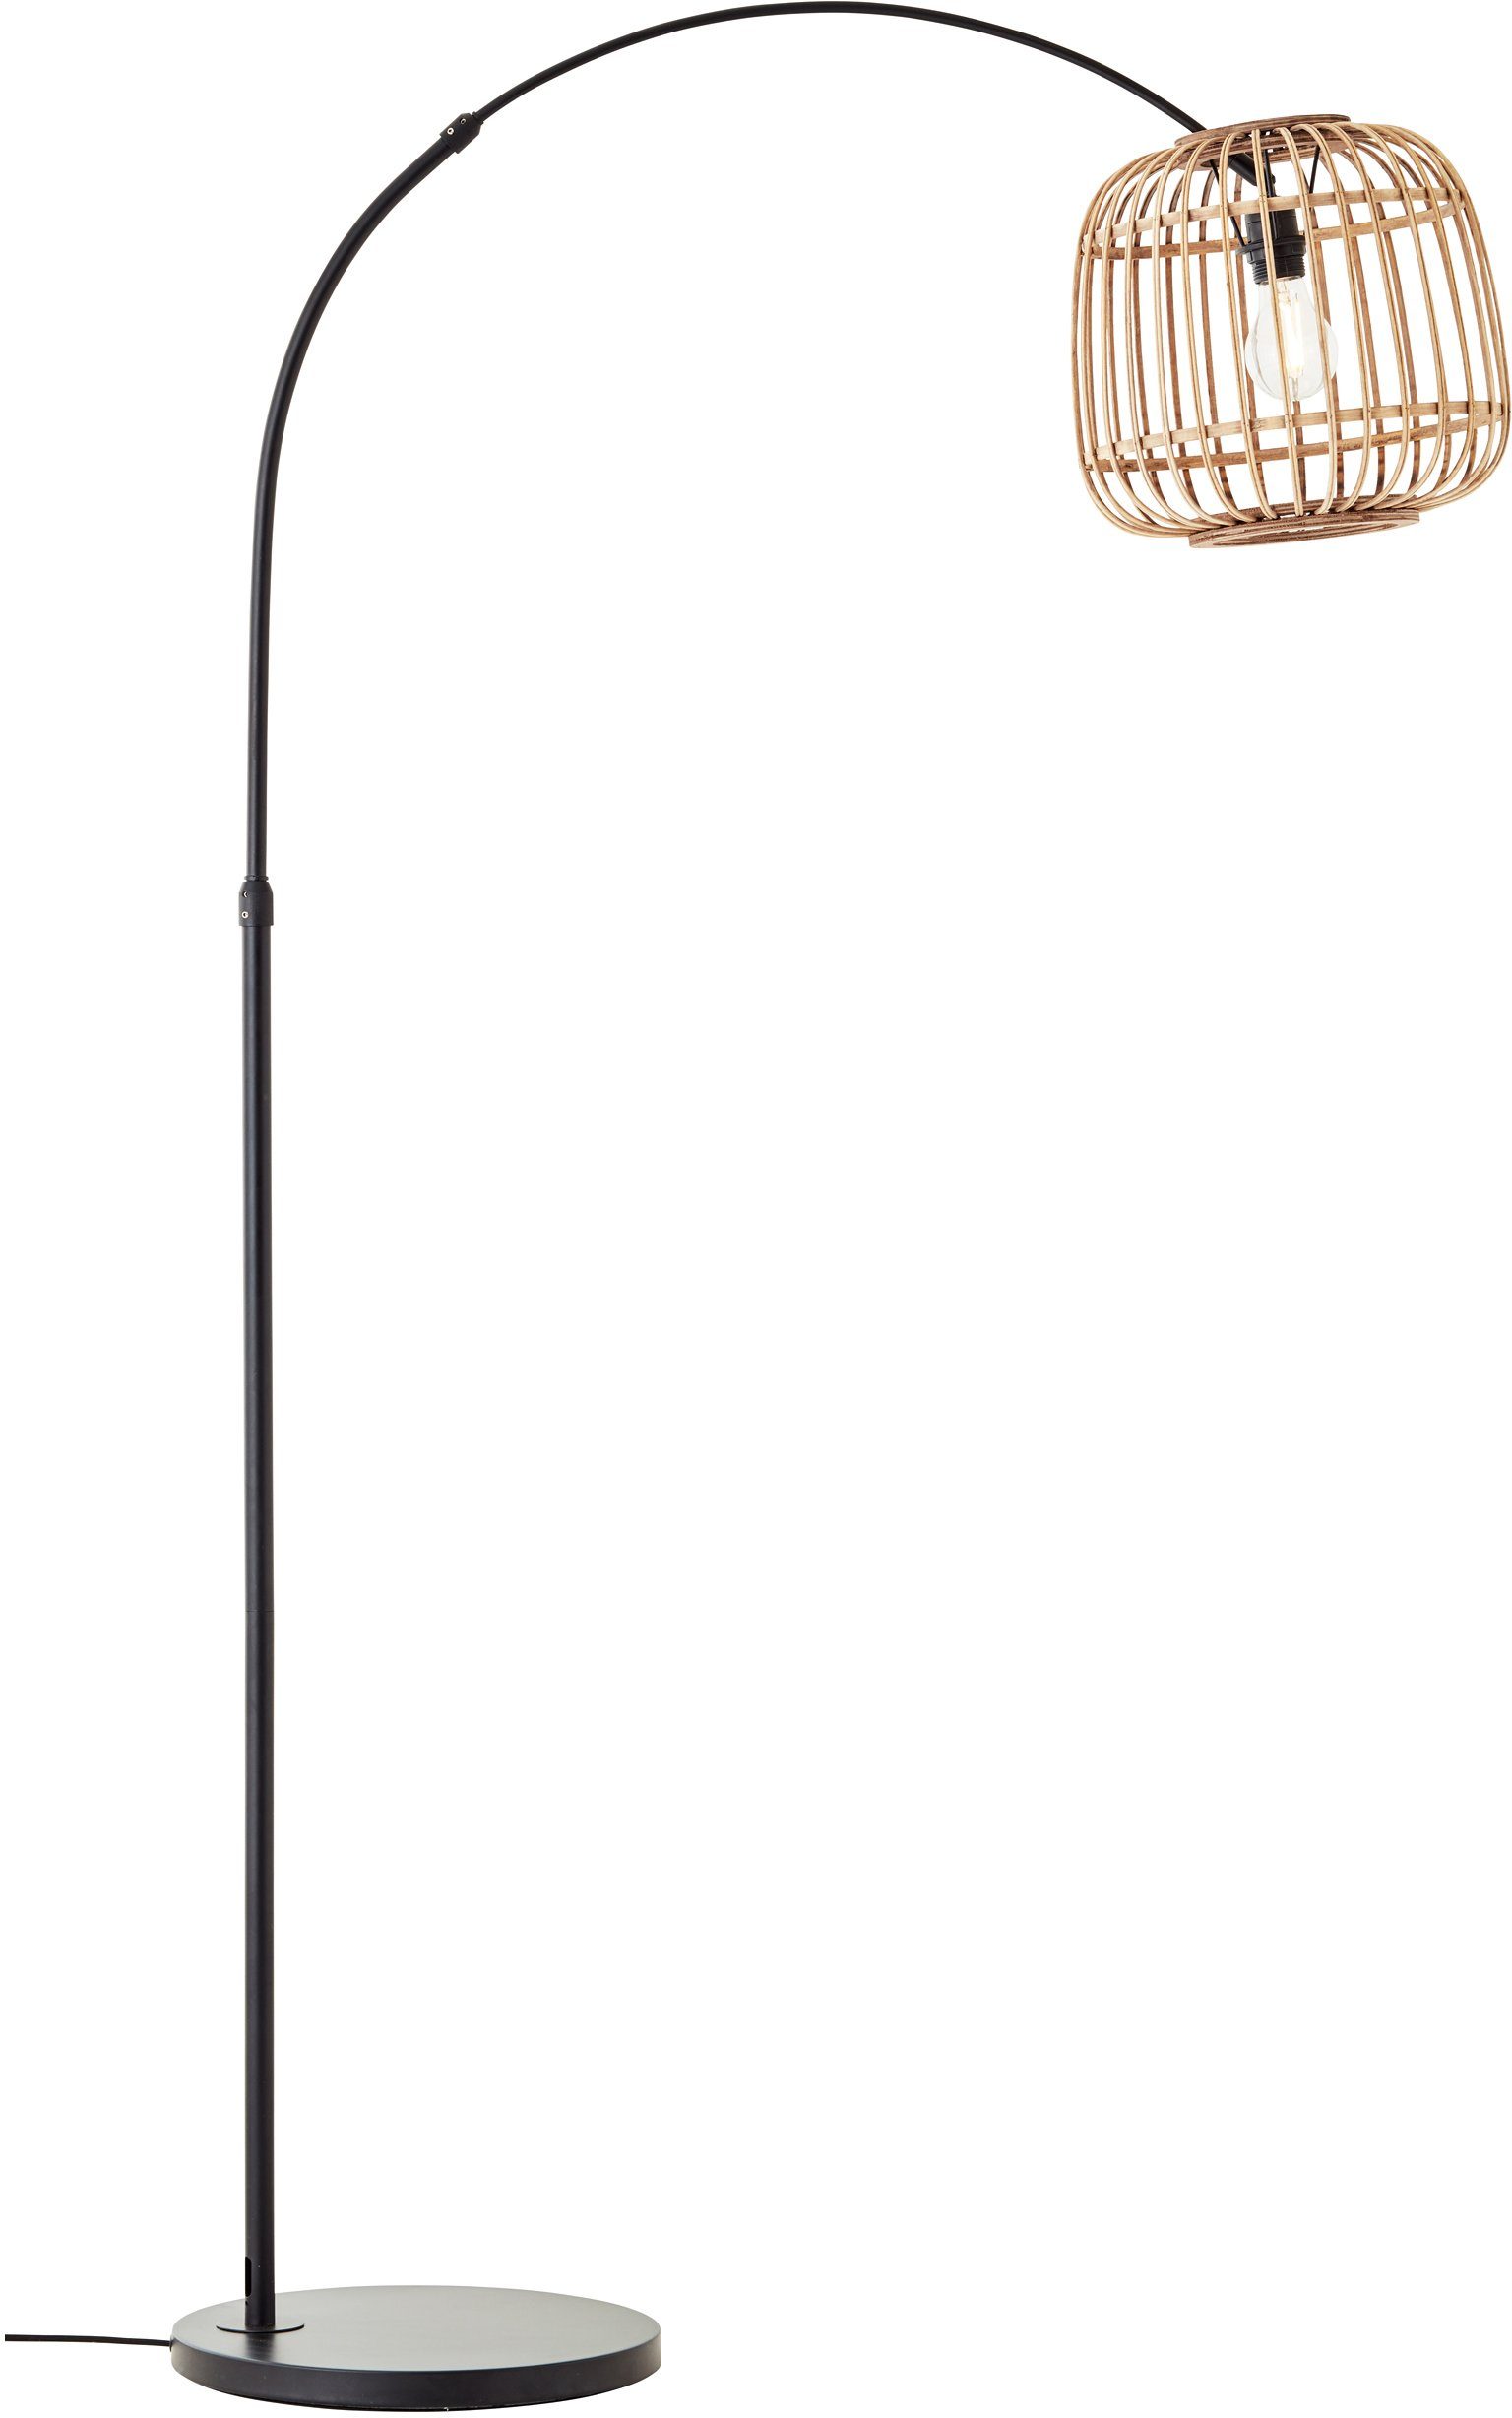 Home affaire Bogenlampe Grazay, ohne Leuchtmittel, Stehleuchte mit 1,7m Höhe und 1,1m Ausladung, Schirm aus Rattan | Bogenlampen